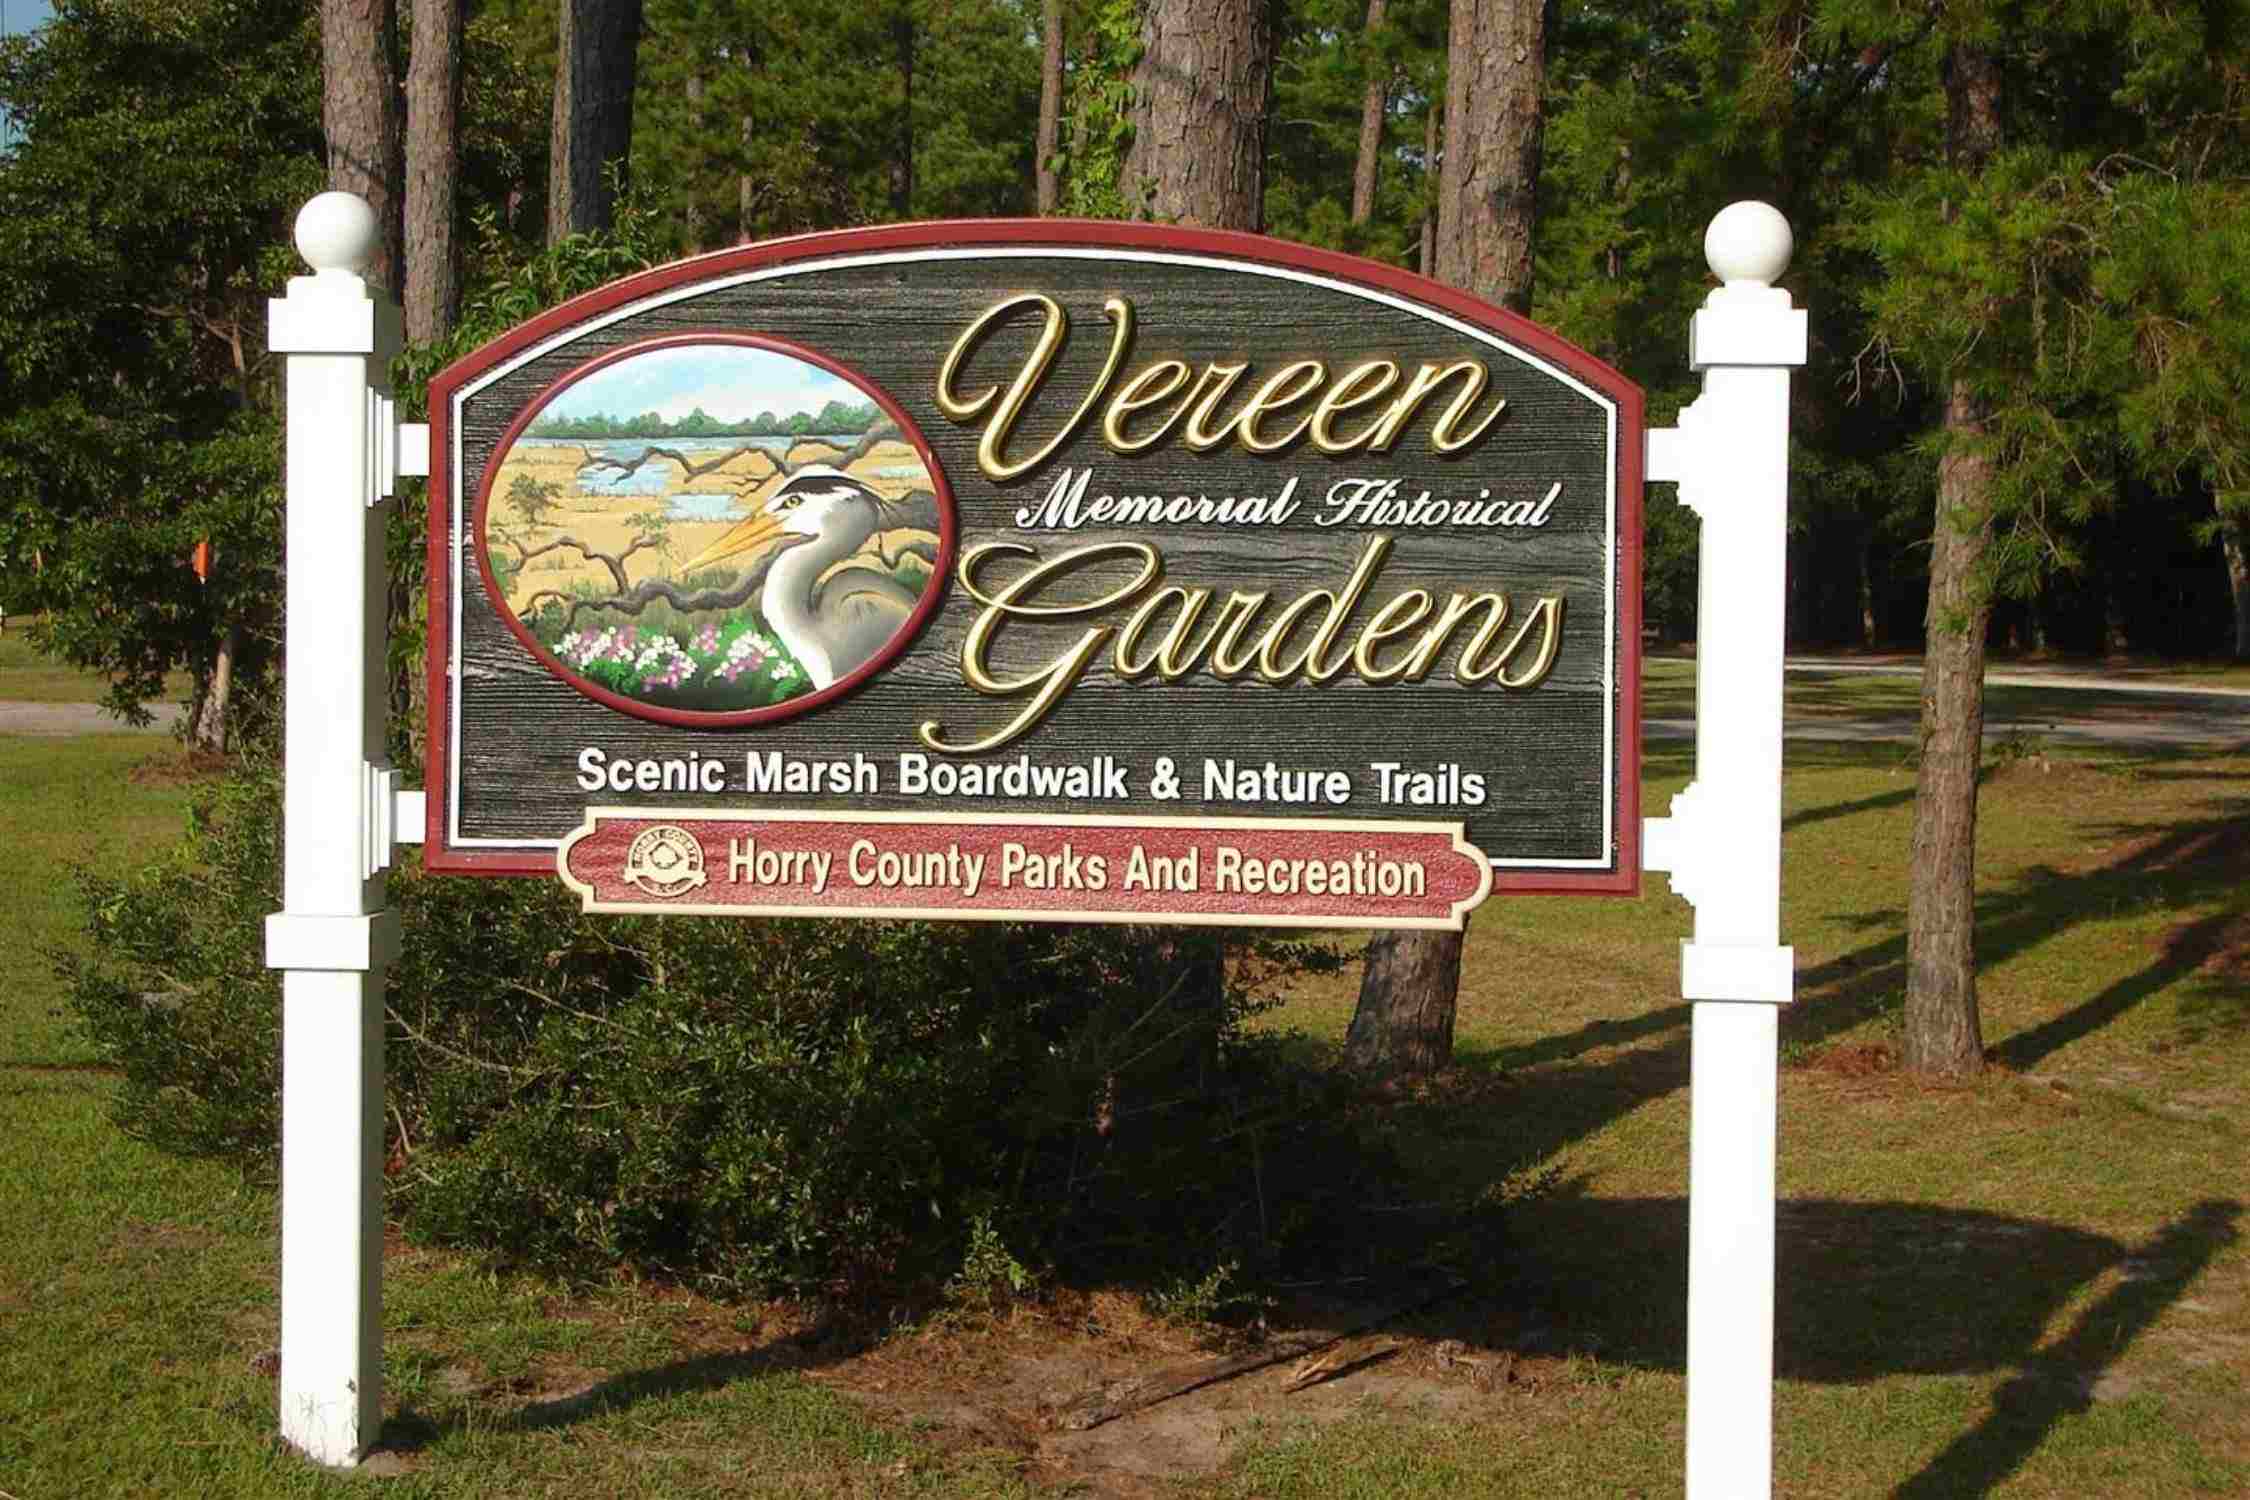 Vereen Memorial Historical Gardens